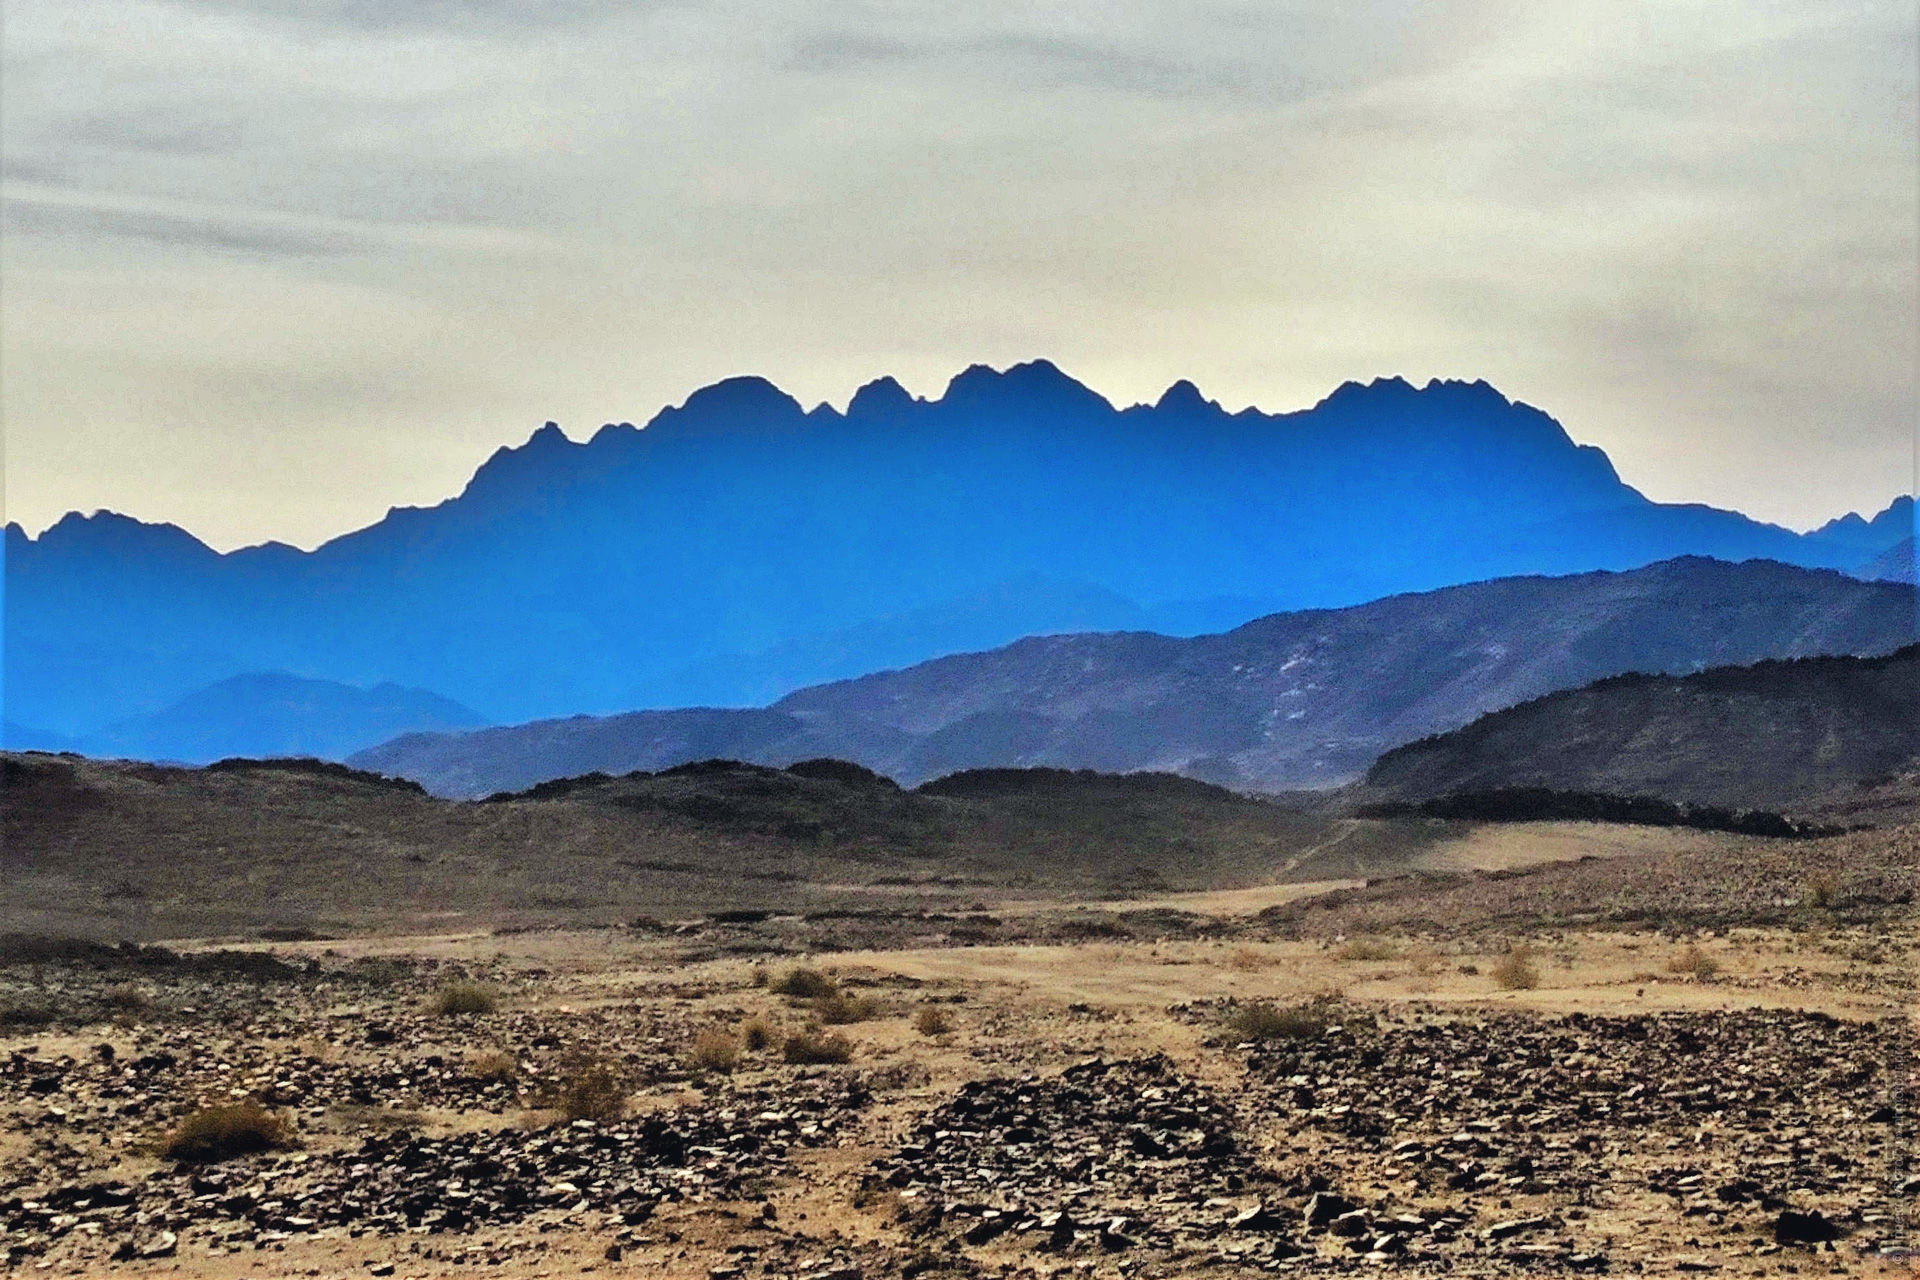 Переезд по вади  до Эль Фуги, приключенческий фототур/тур пустыни и горы Синая, Египет, 27 ноября - 8 декабря 2021 года.